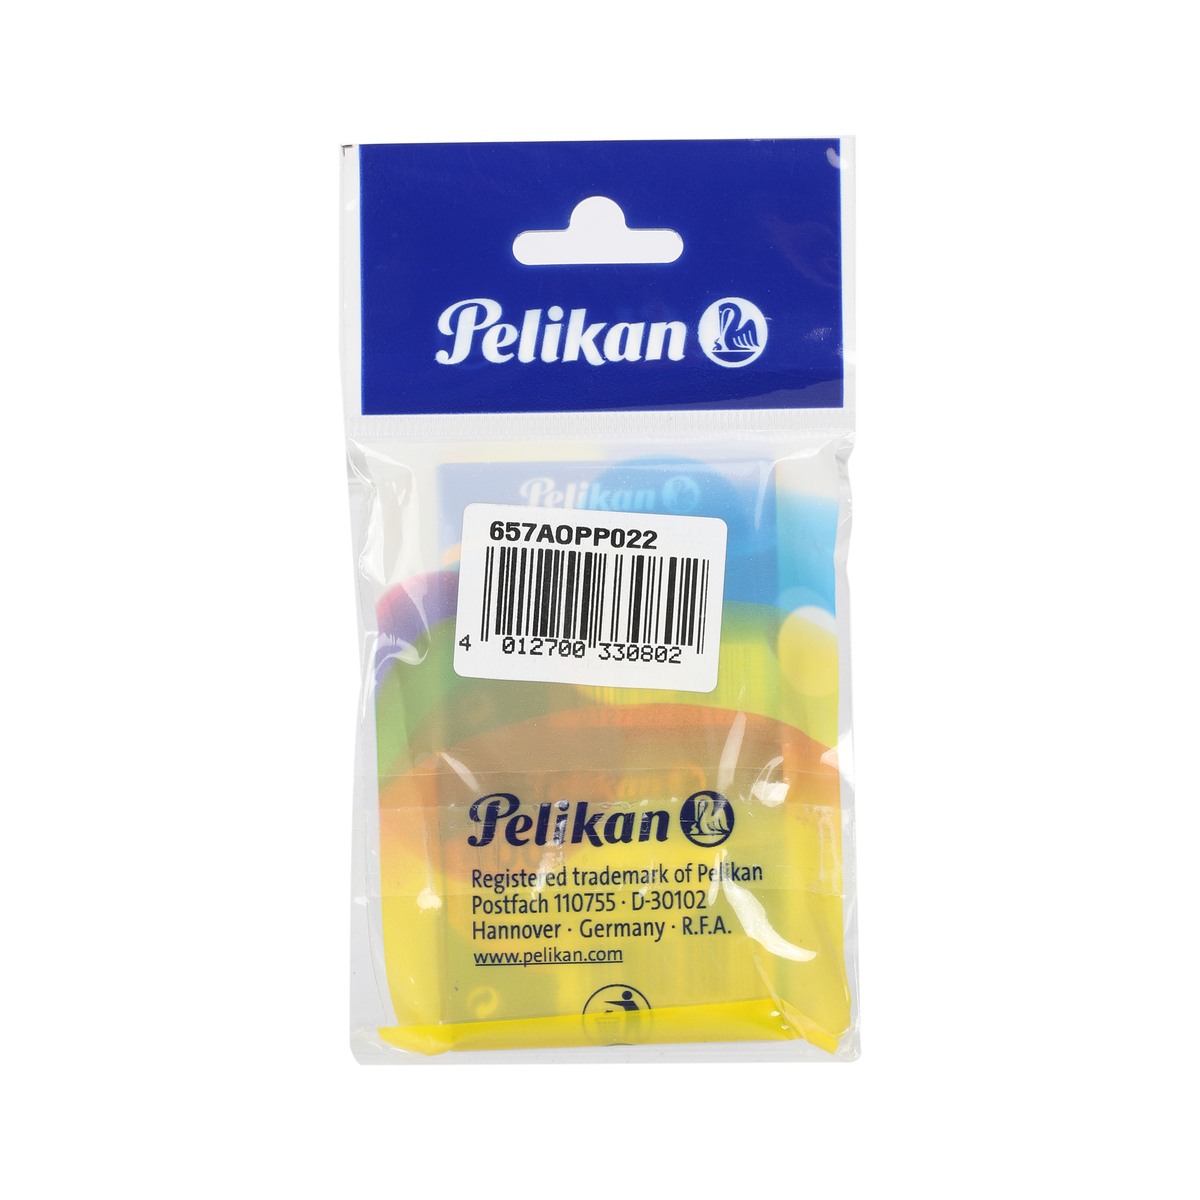 Pelikan Ink Cartridge 2pcs